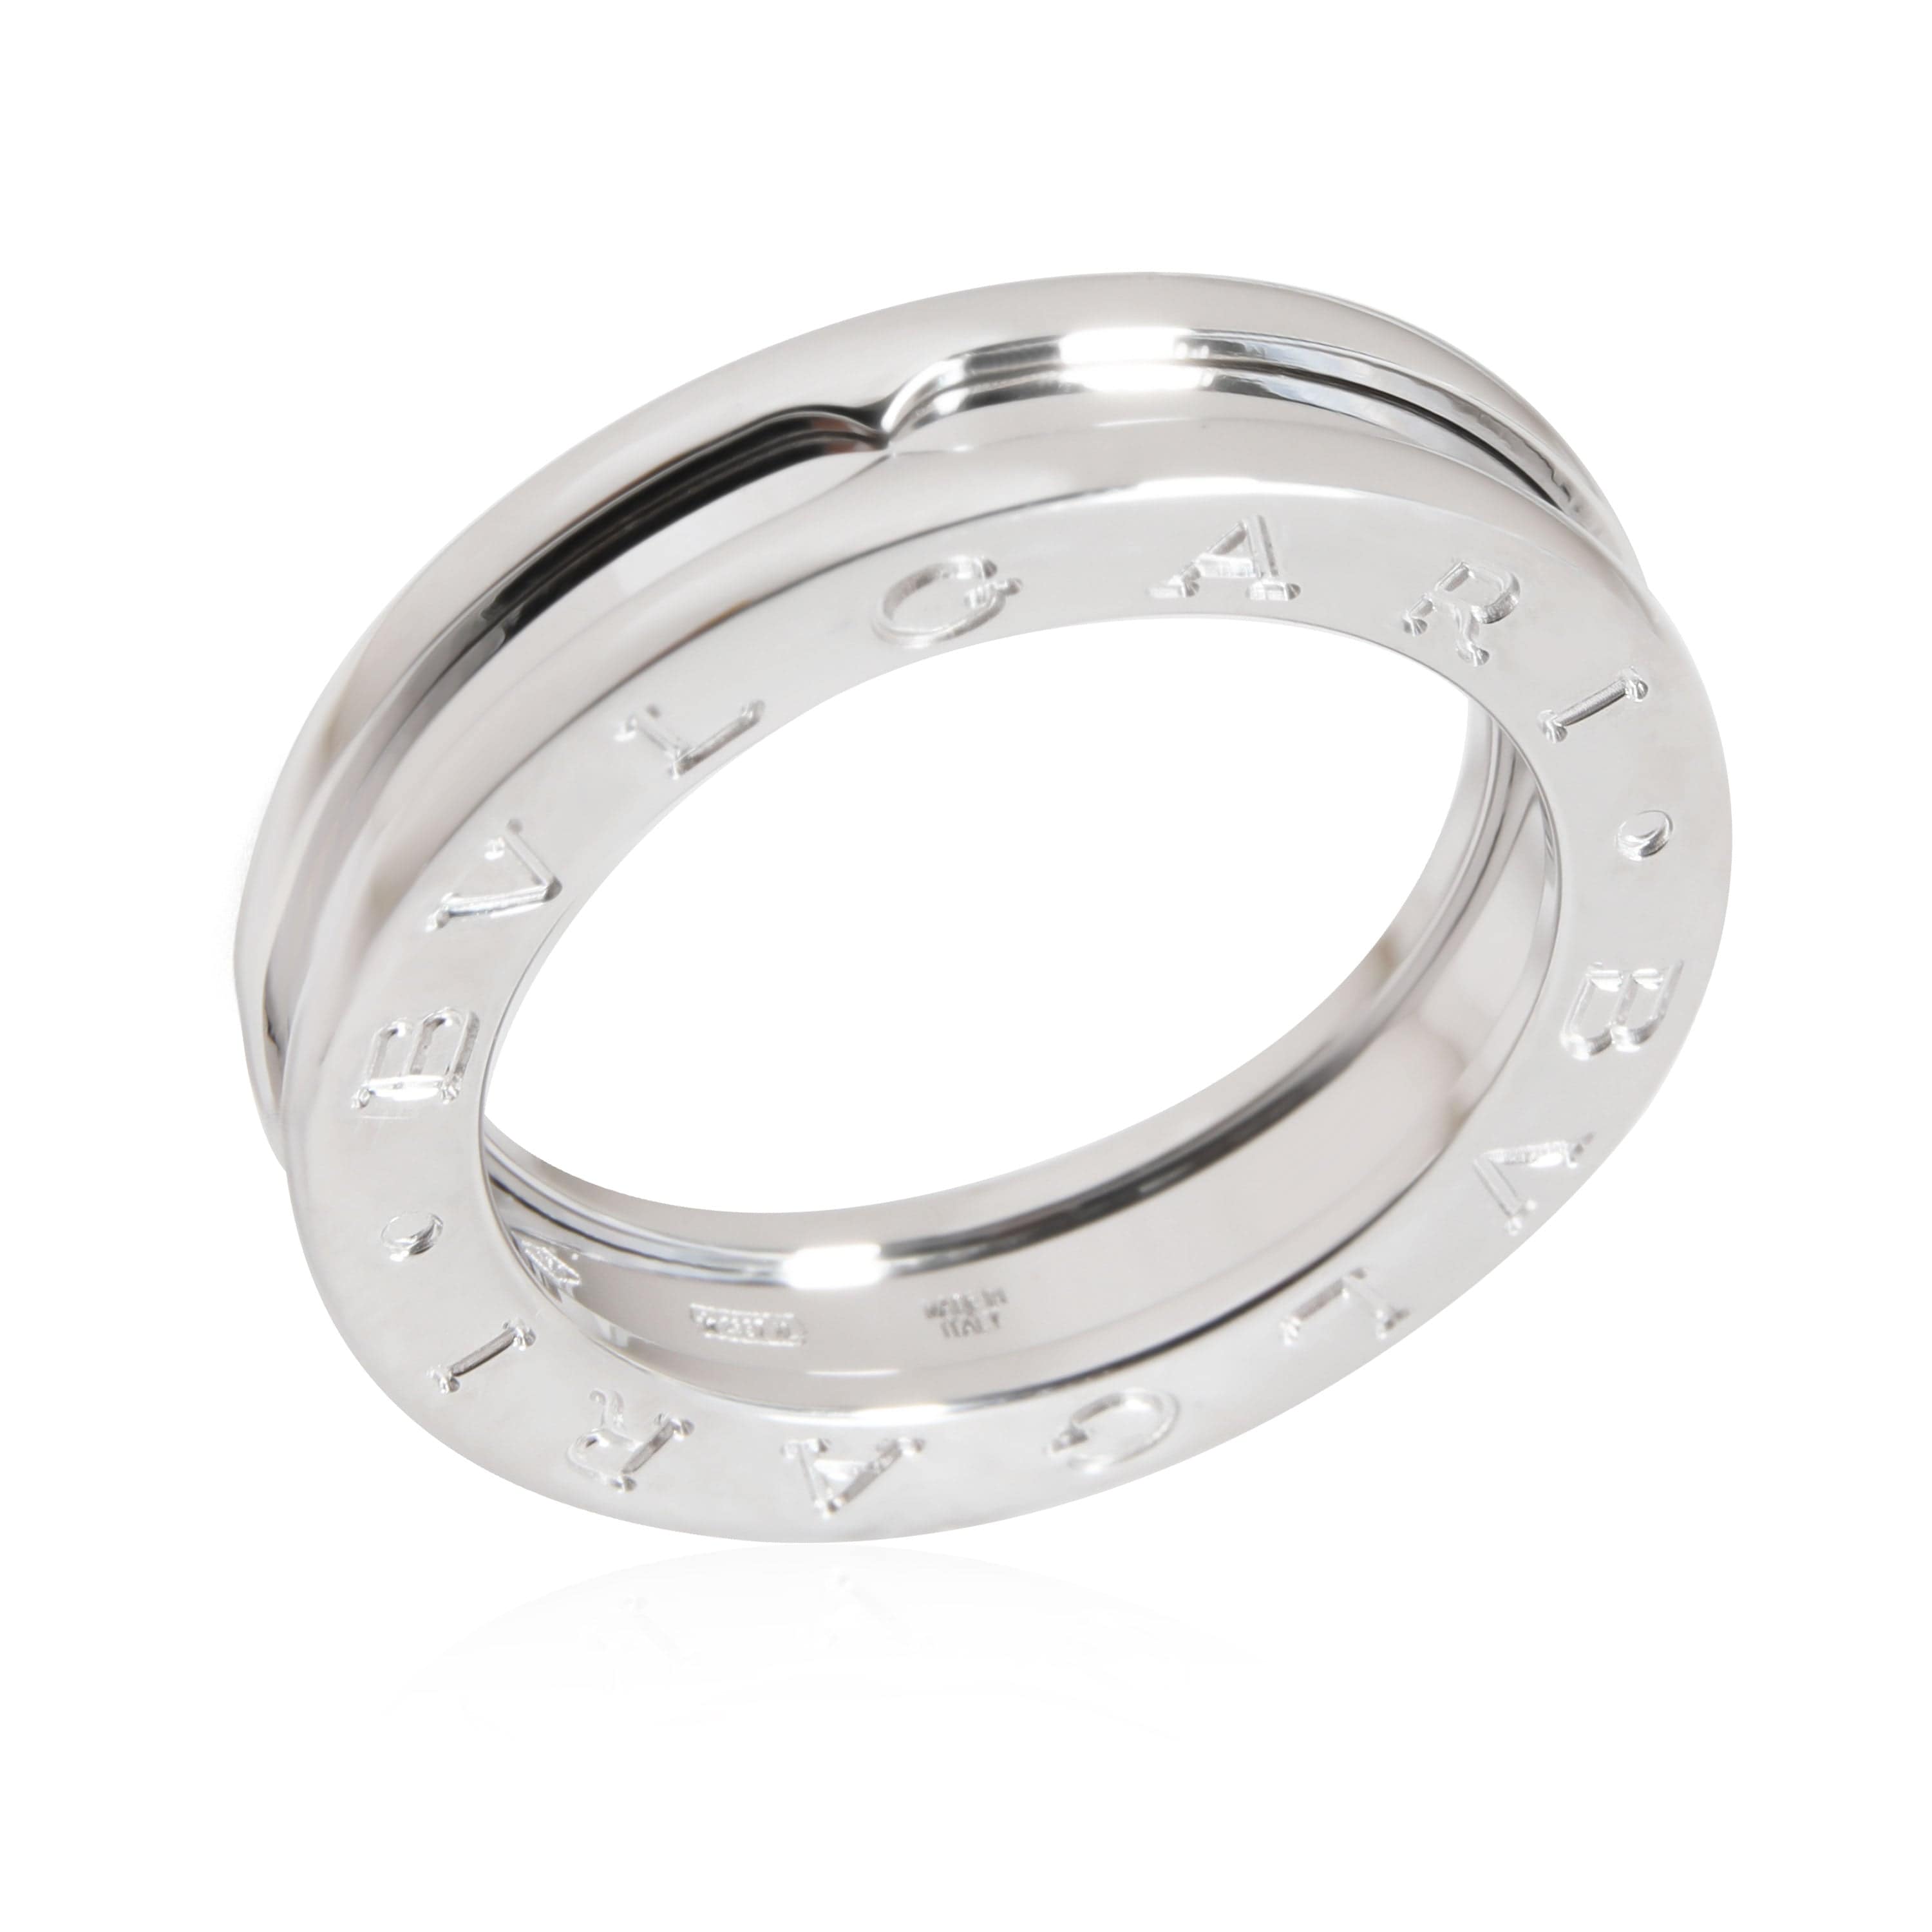 BVLGARI BVLGARI B.Zero1 One-Band Ring in 18K White Gold